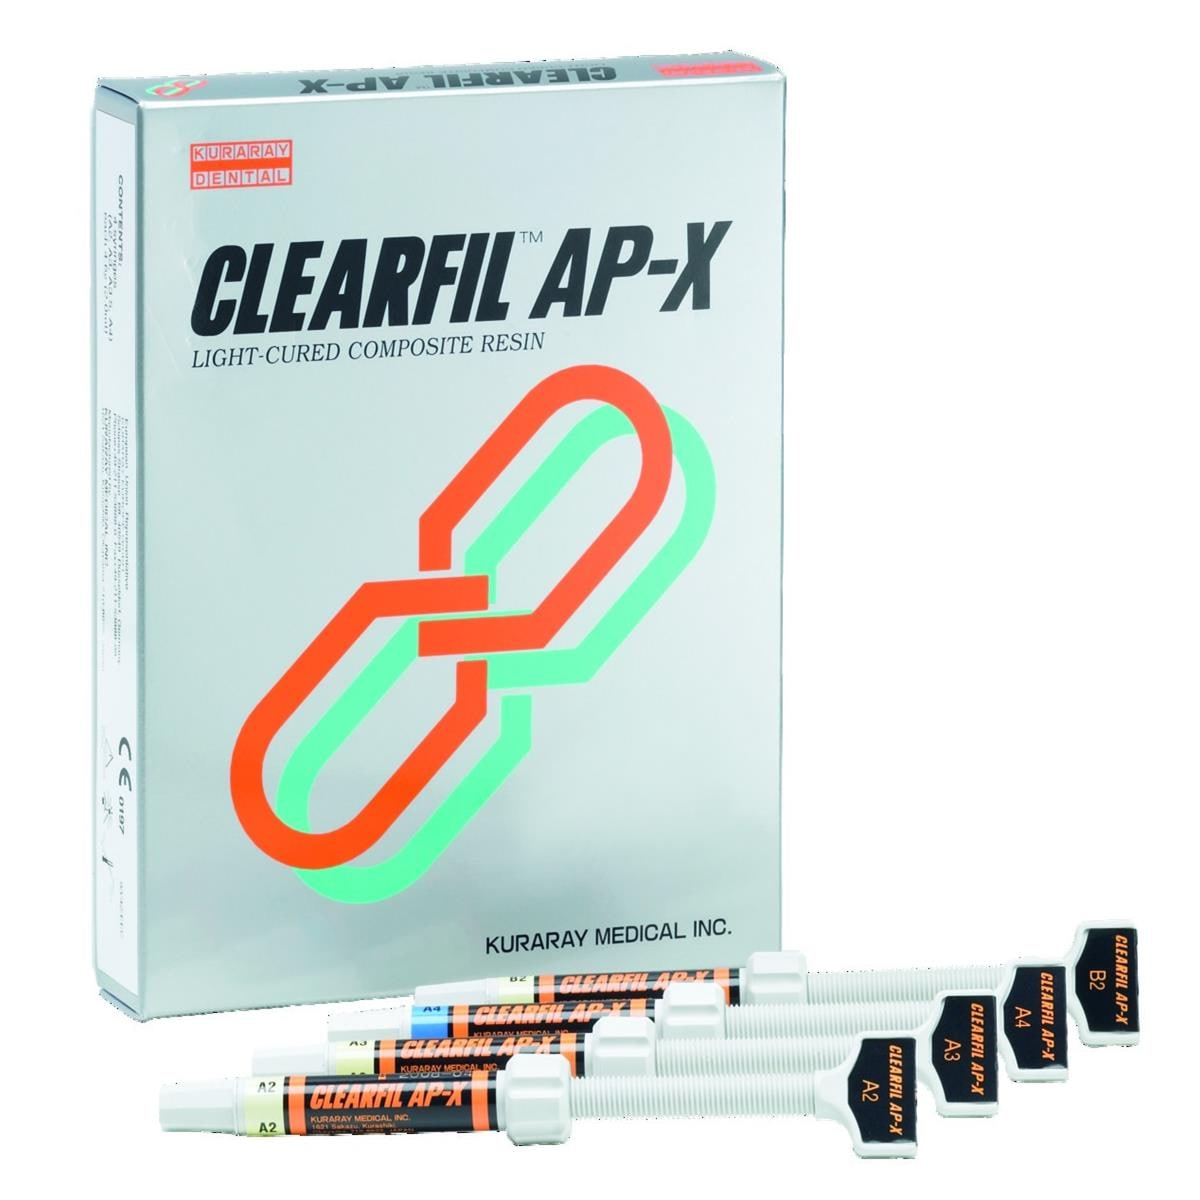 Clearfil AP-X KURARAY - C3 - Seringue de 4,6g